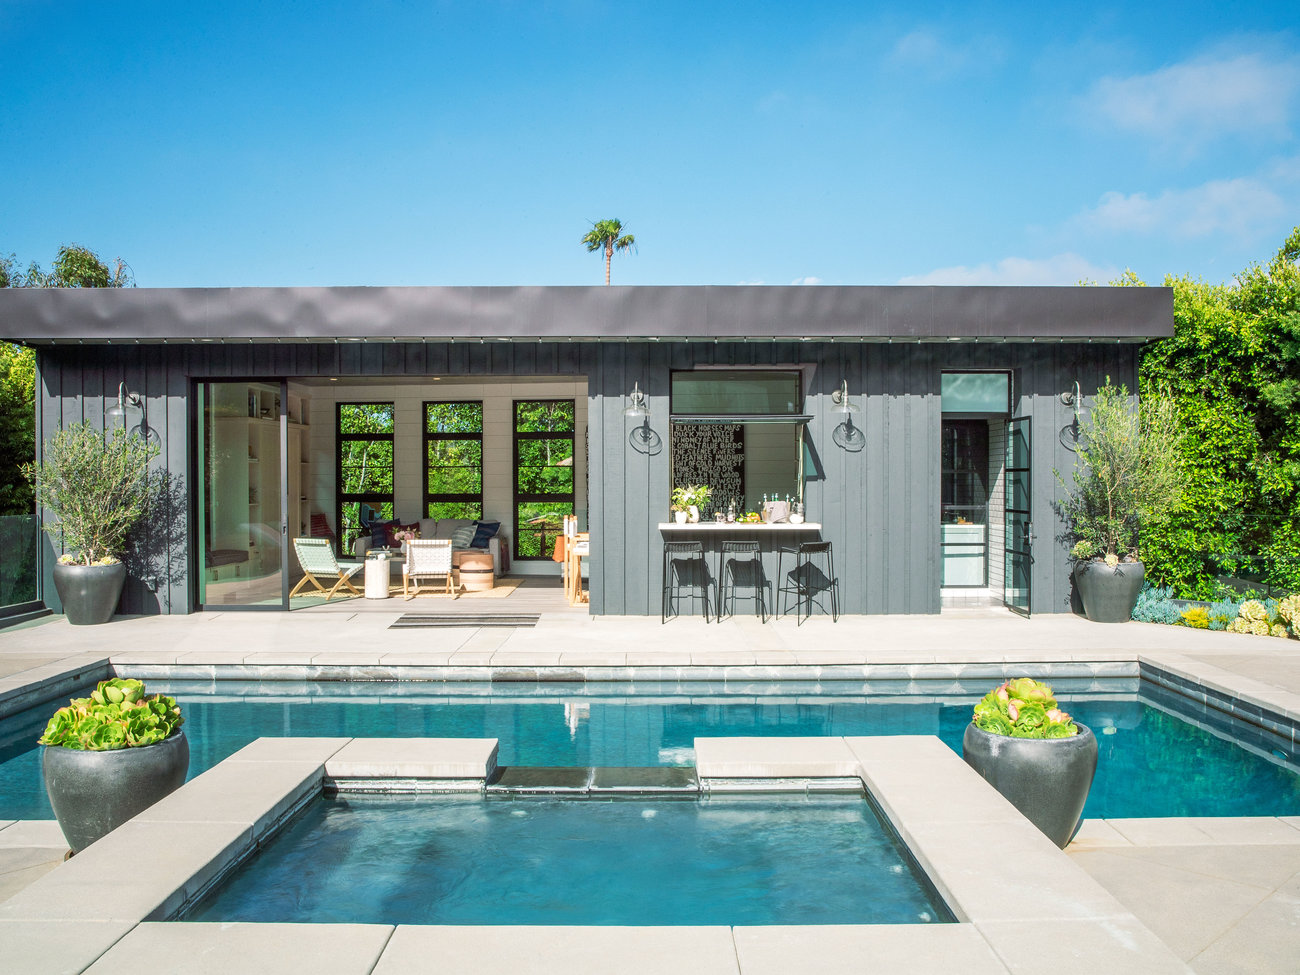 Take a 360-Degree Tour of This Glamorous L.A. Poolhouse